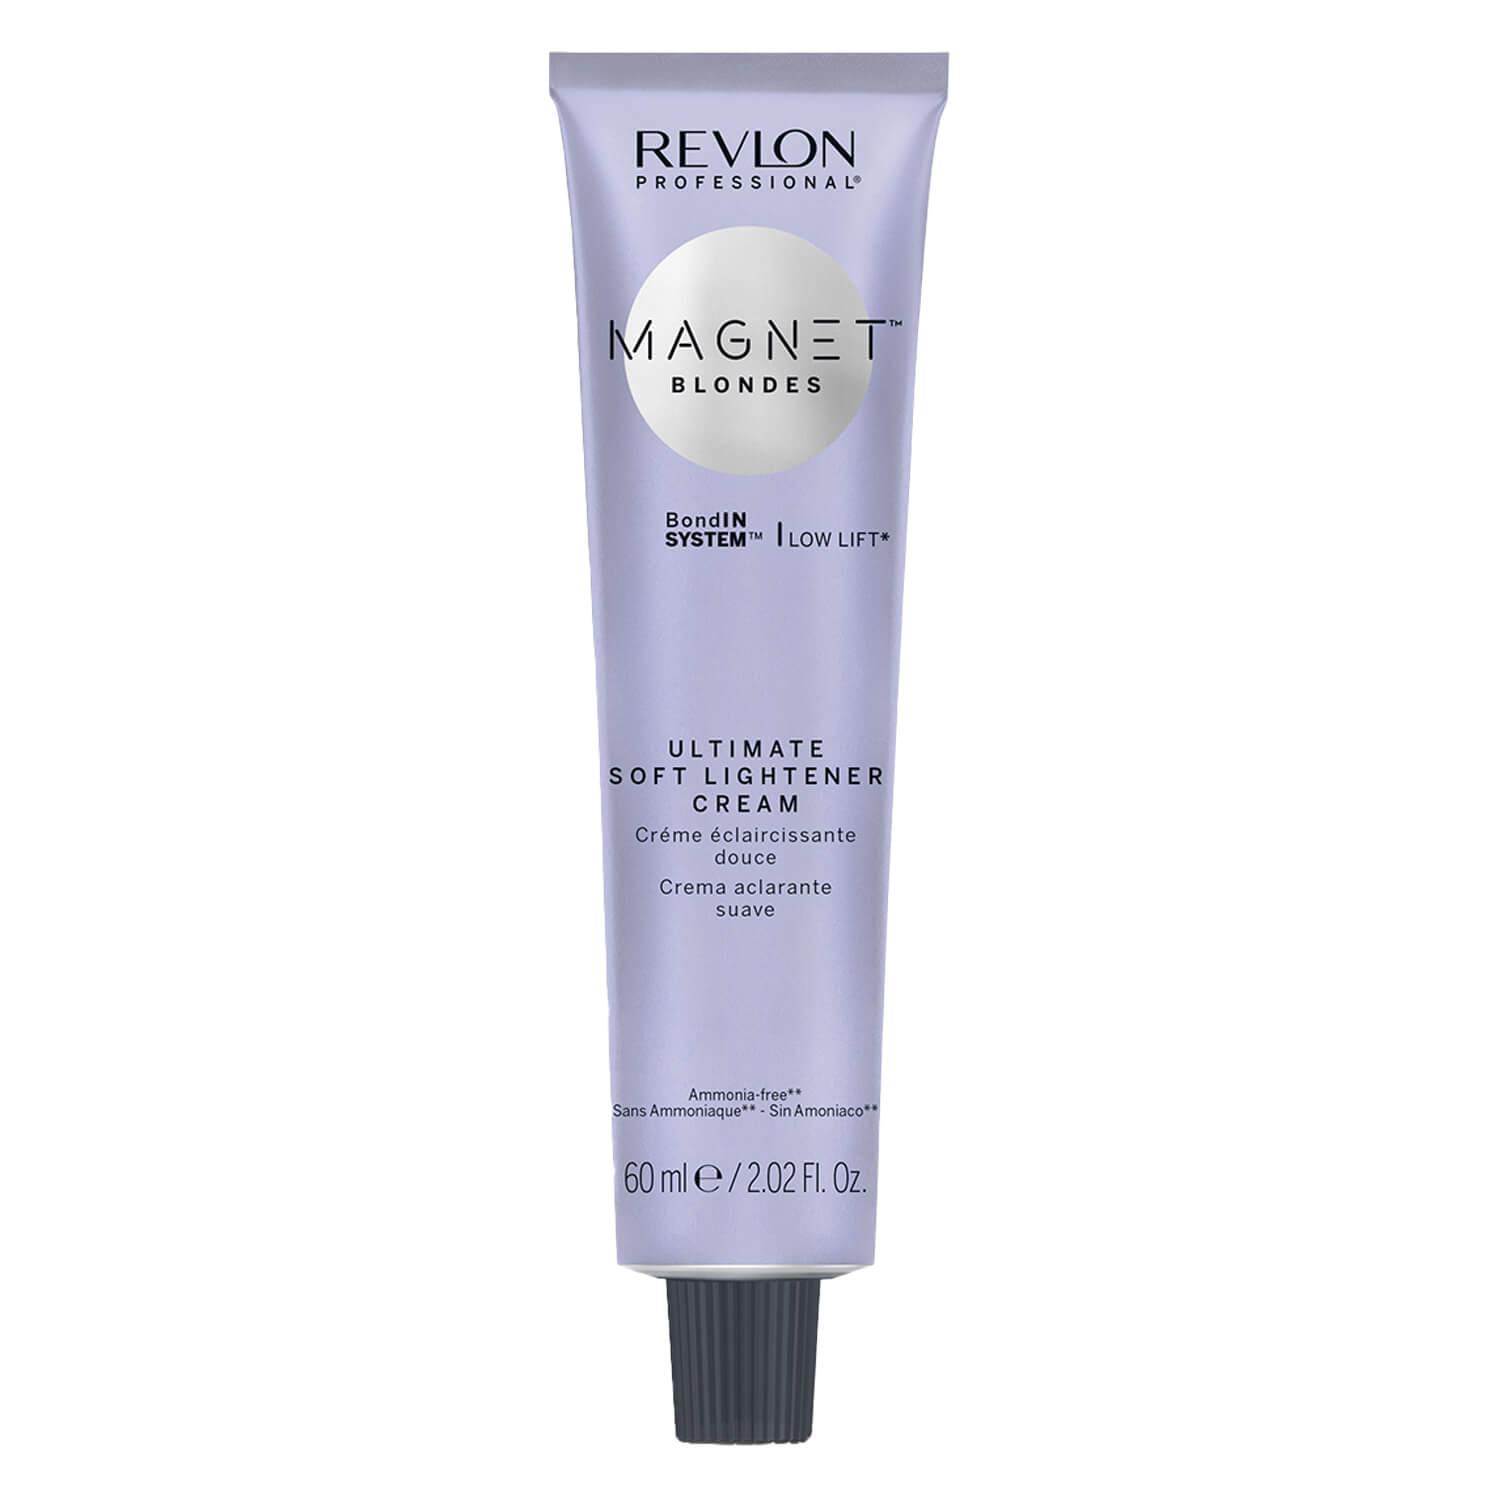 Magnet Blondes Ultimate Soft Lightener Cream